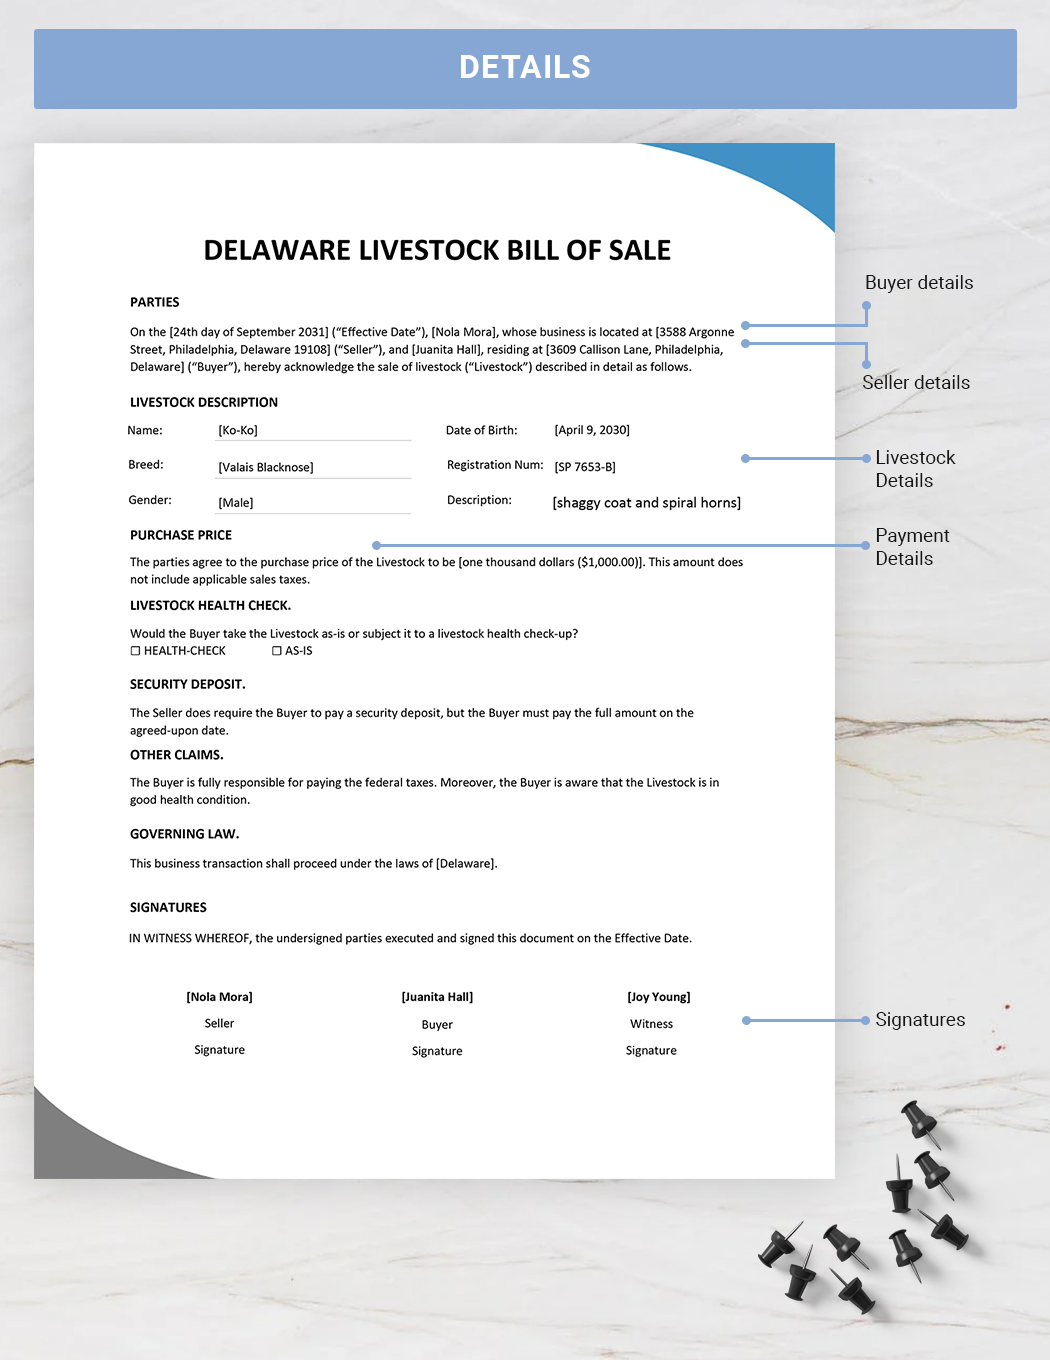 Delaware Livestock Bill of Sale Template